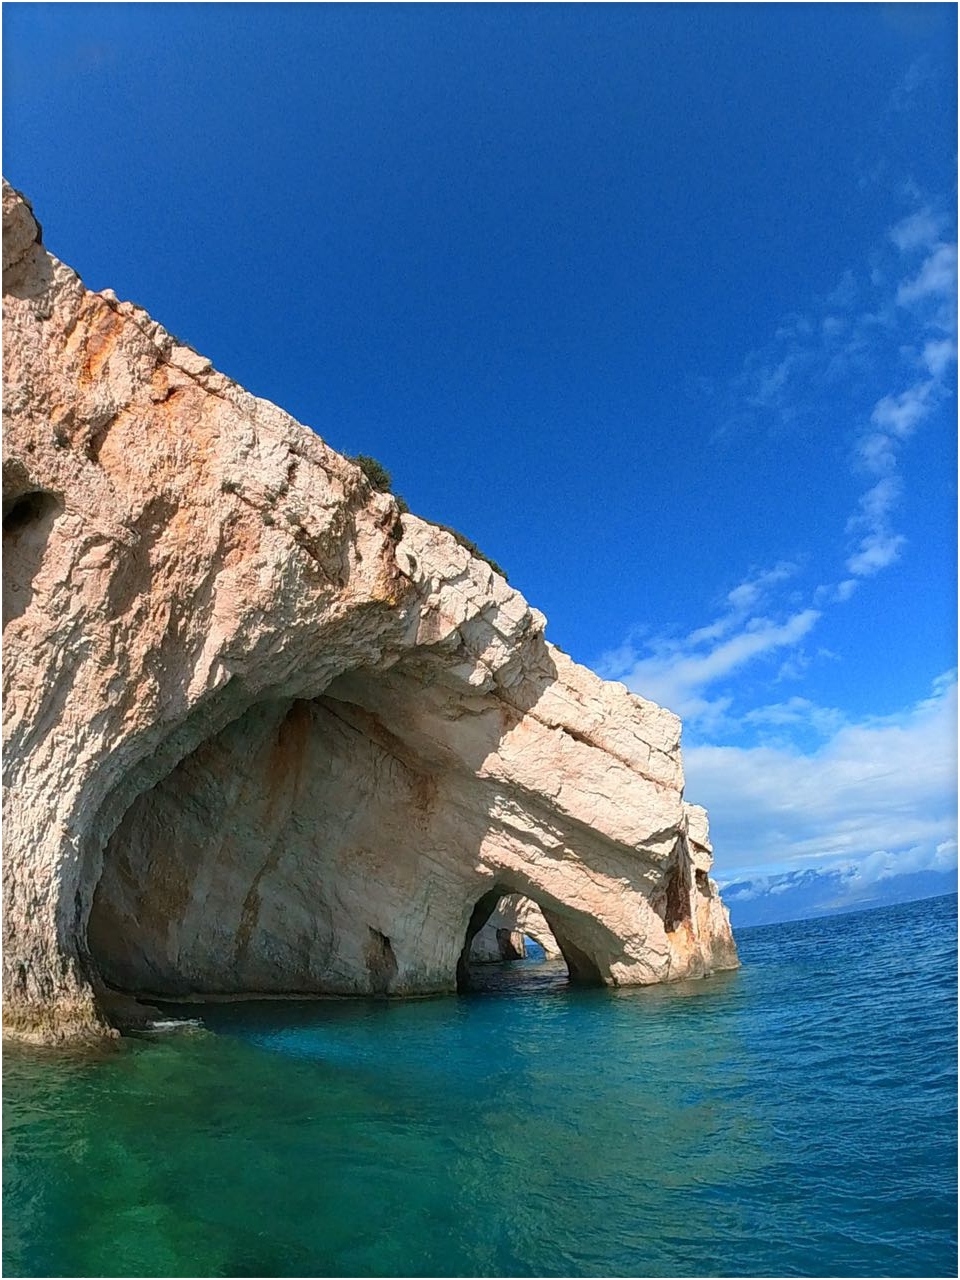 附近的“蓝洞”因岩石海藻和阳光的完美结合而非常有名。  蓝洞不是单独一个洞穴，而是沿海岸线一排天然形